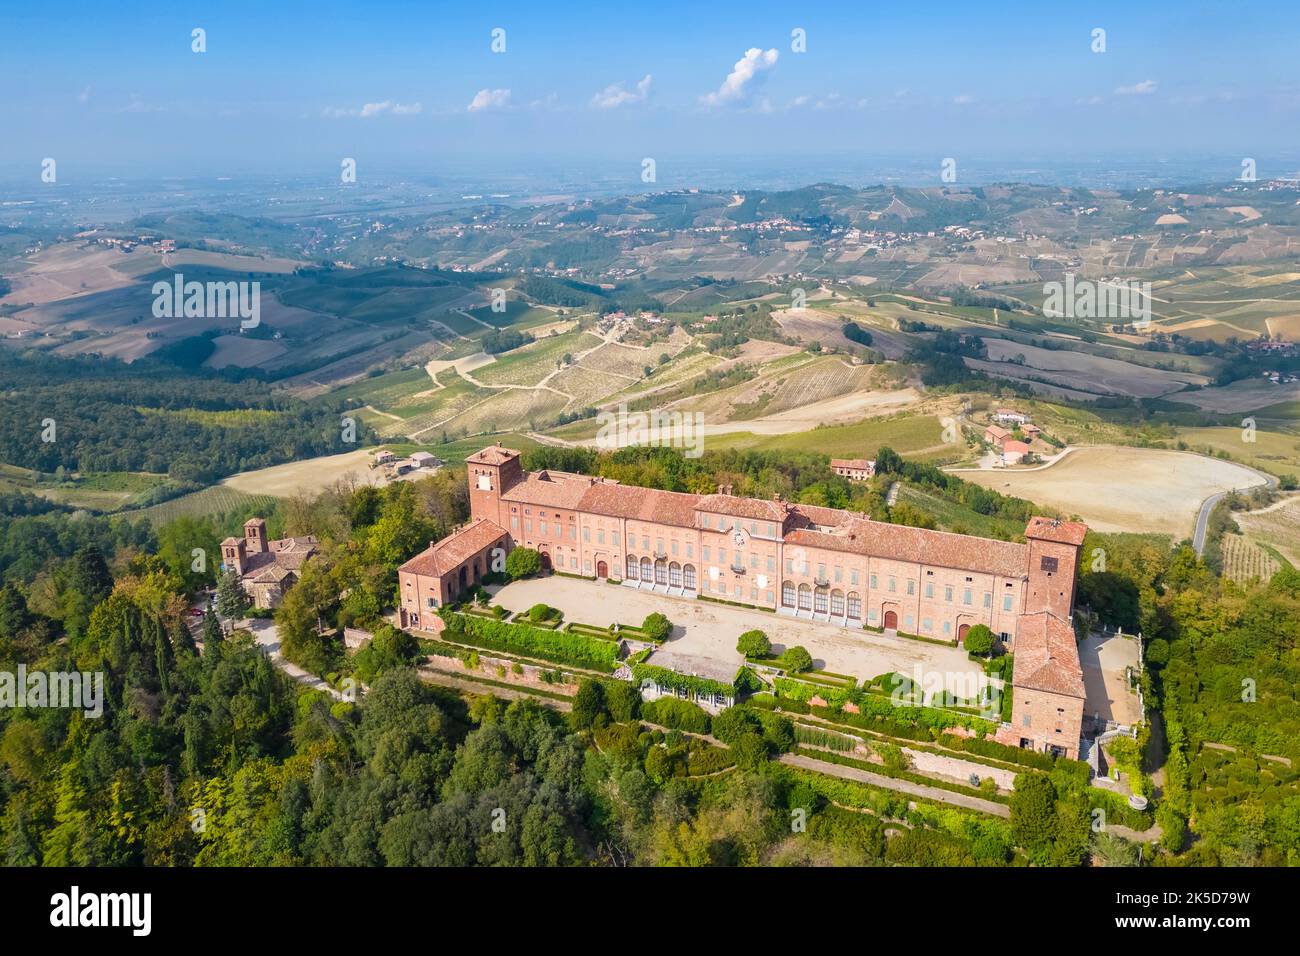 Luftaufnahme des Schlosses und der Weinberge von Montalto Pavese. Montalto Pavese, Oltrepo Pavese, Provinz Pavia, Lombardei, Italien. Stockfoto